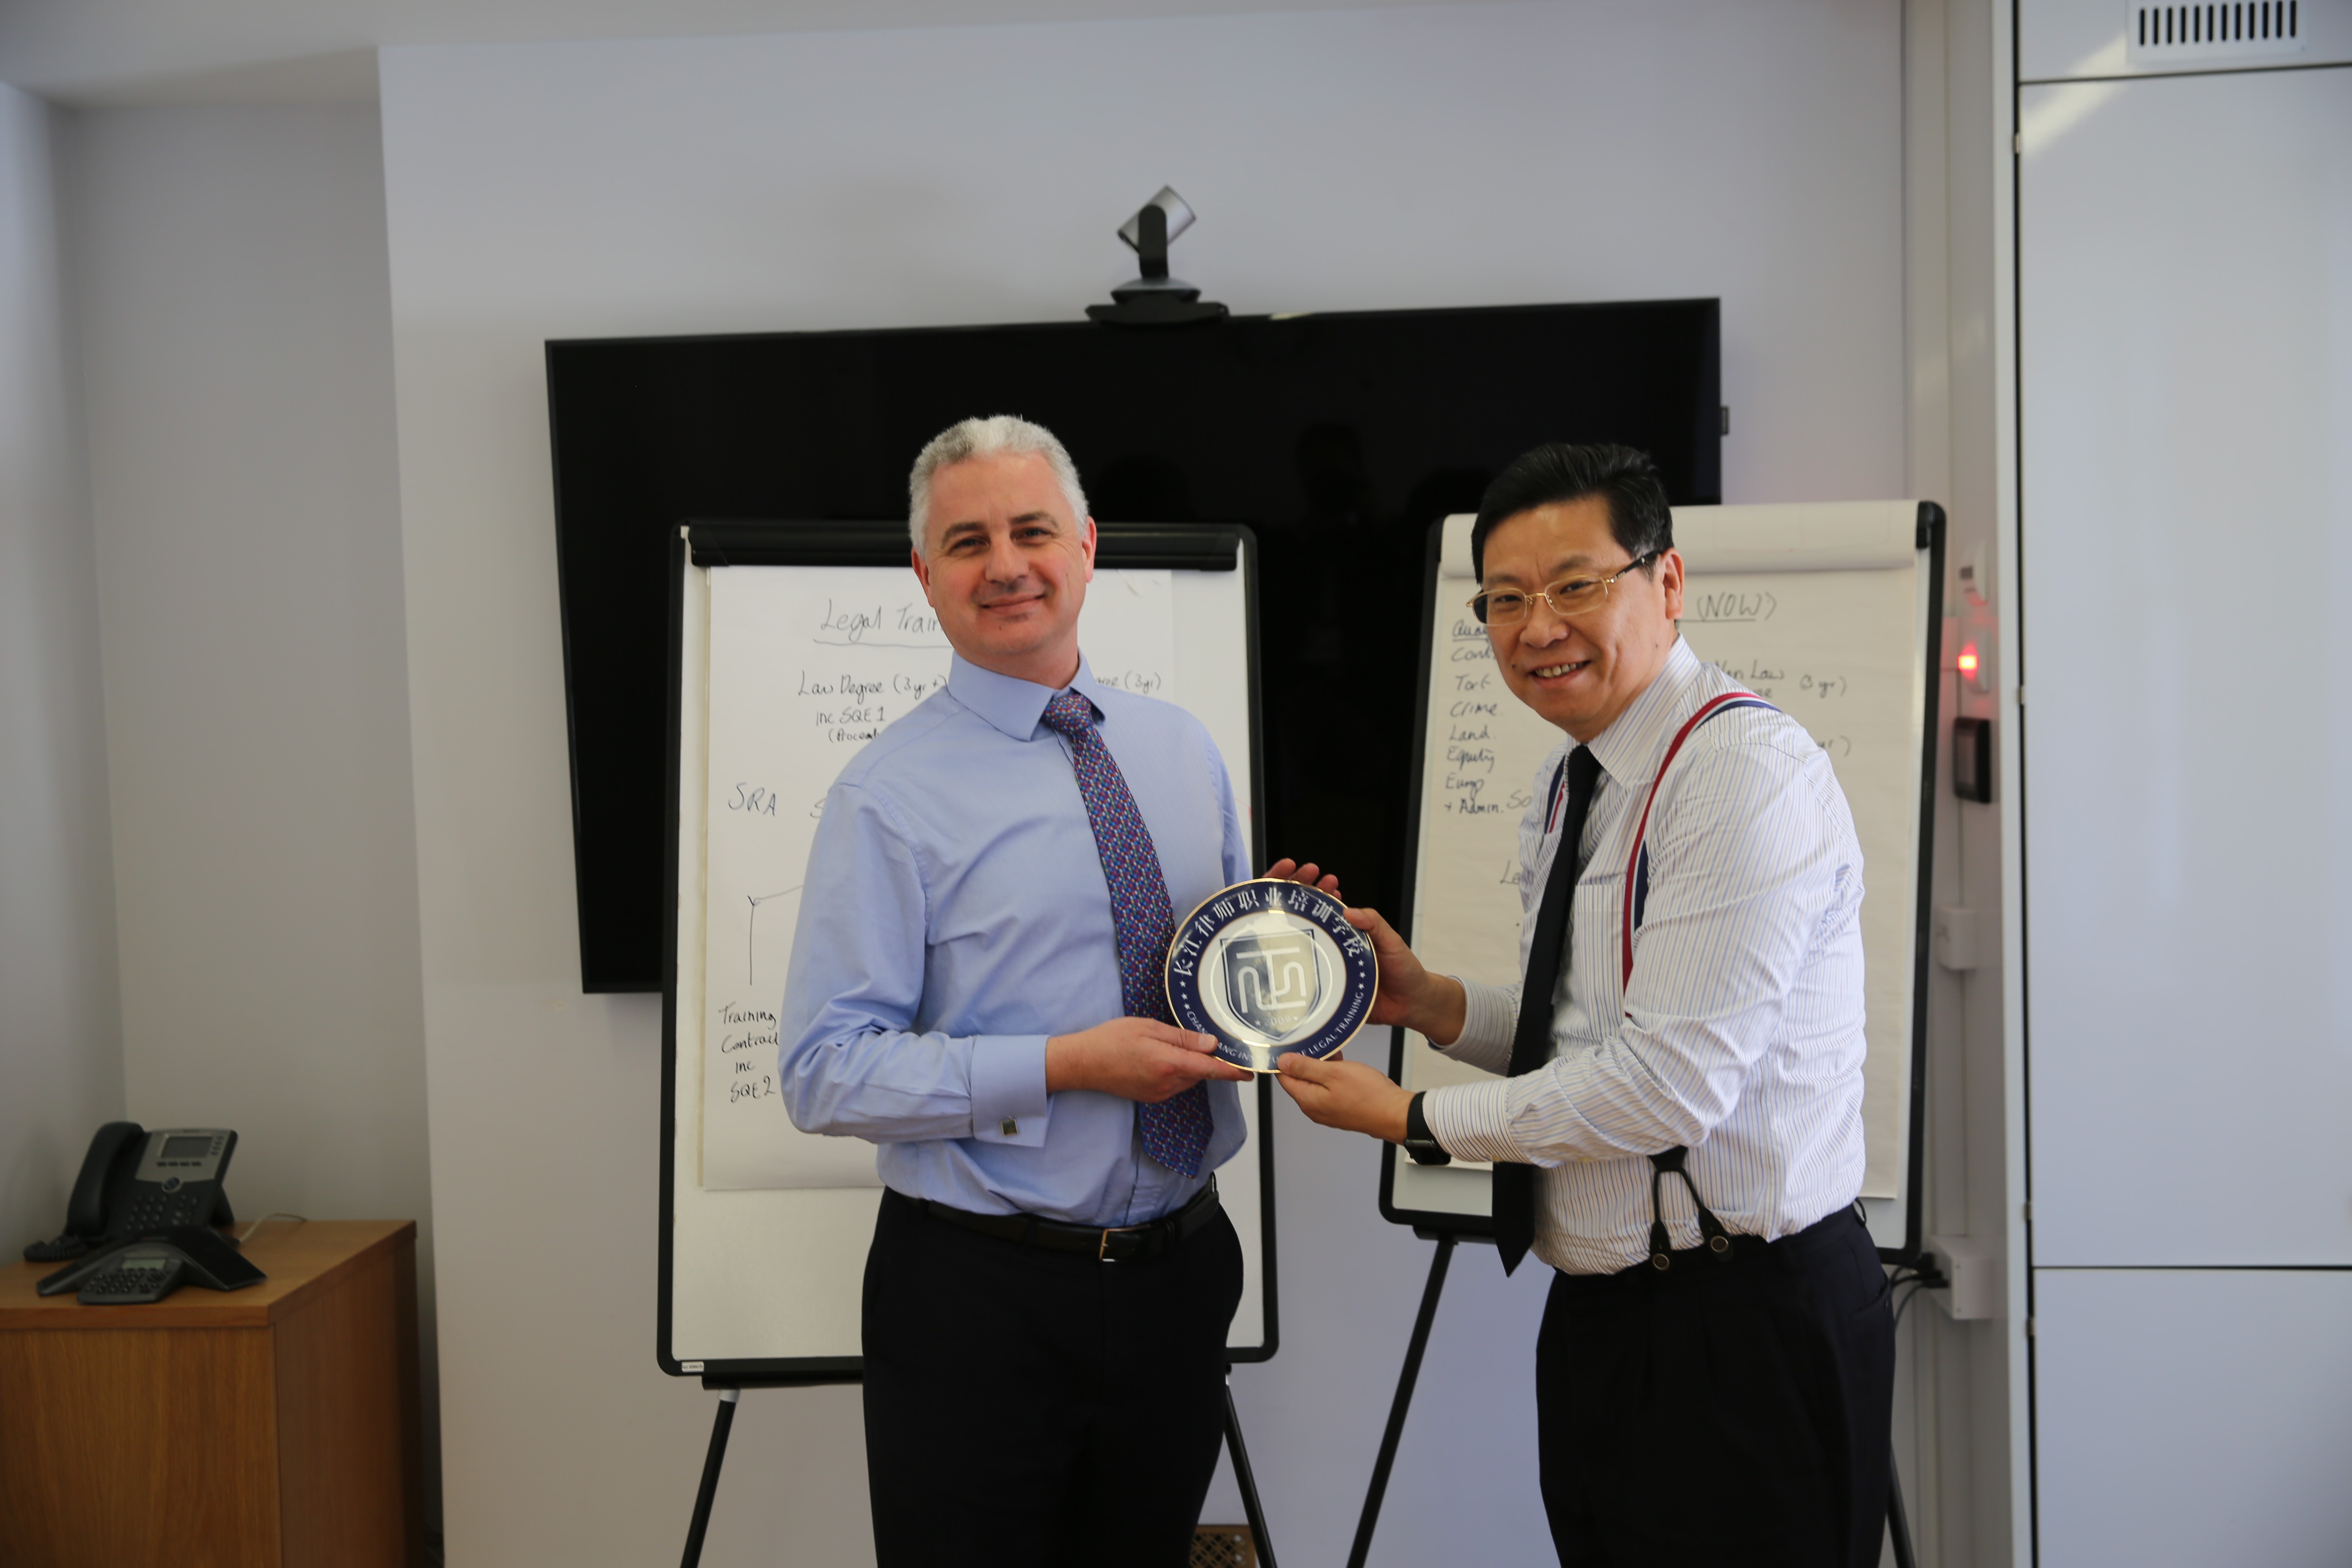  照片注释：2019年3月刘锡秋校长访问伦敦格雷律师学院，与英国同仁交流律师职 业教育经验，并赠送学校礼品。